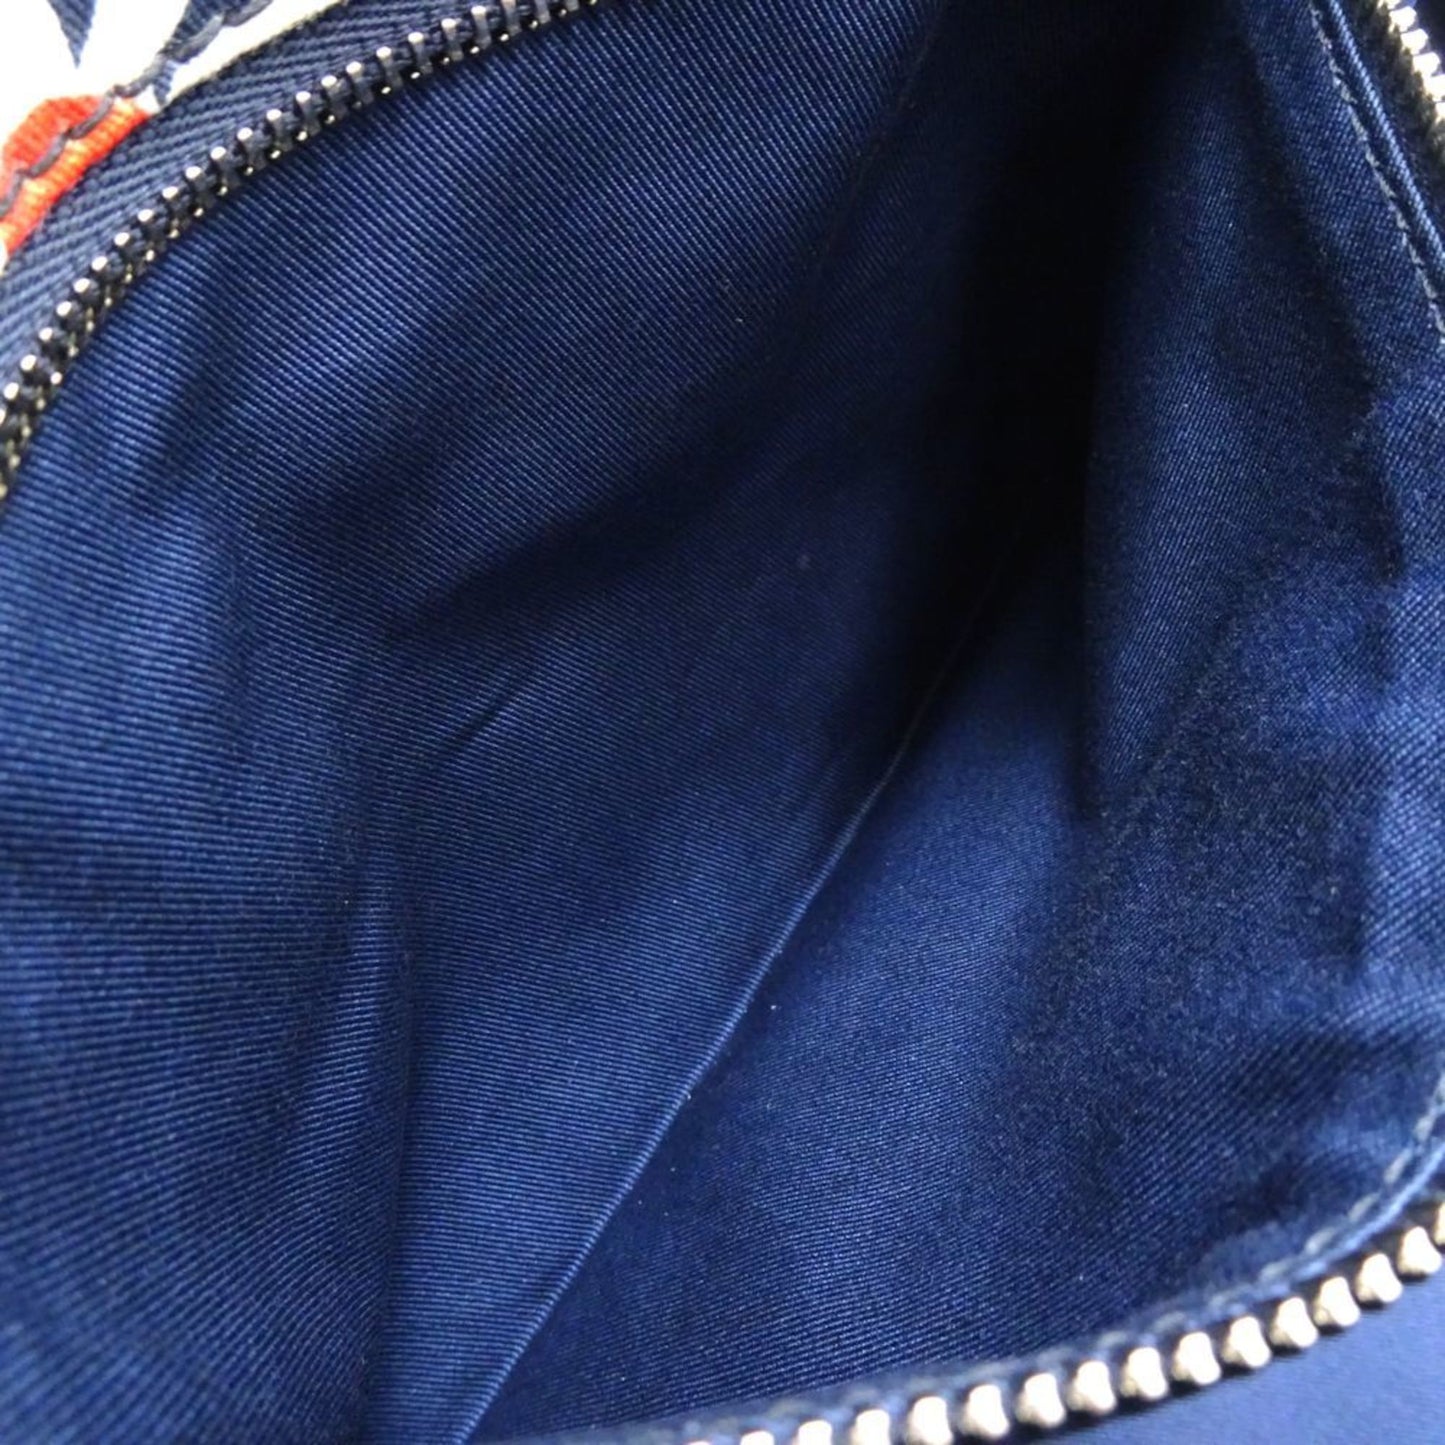 Miu Miu Women's Elegant Navy Canvas Handbag with Shoulder Strap in Navy